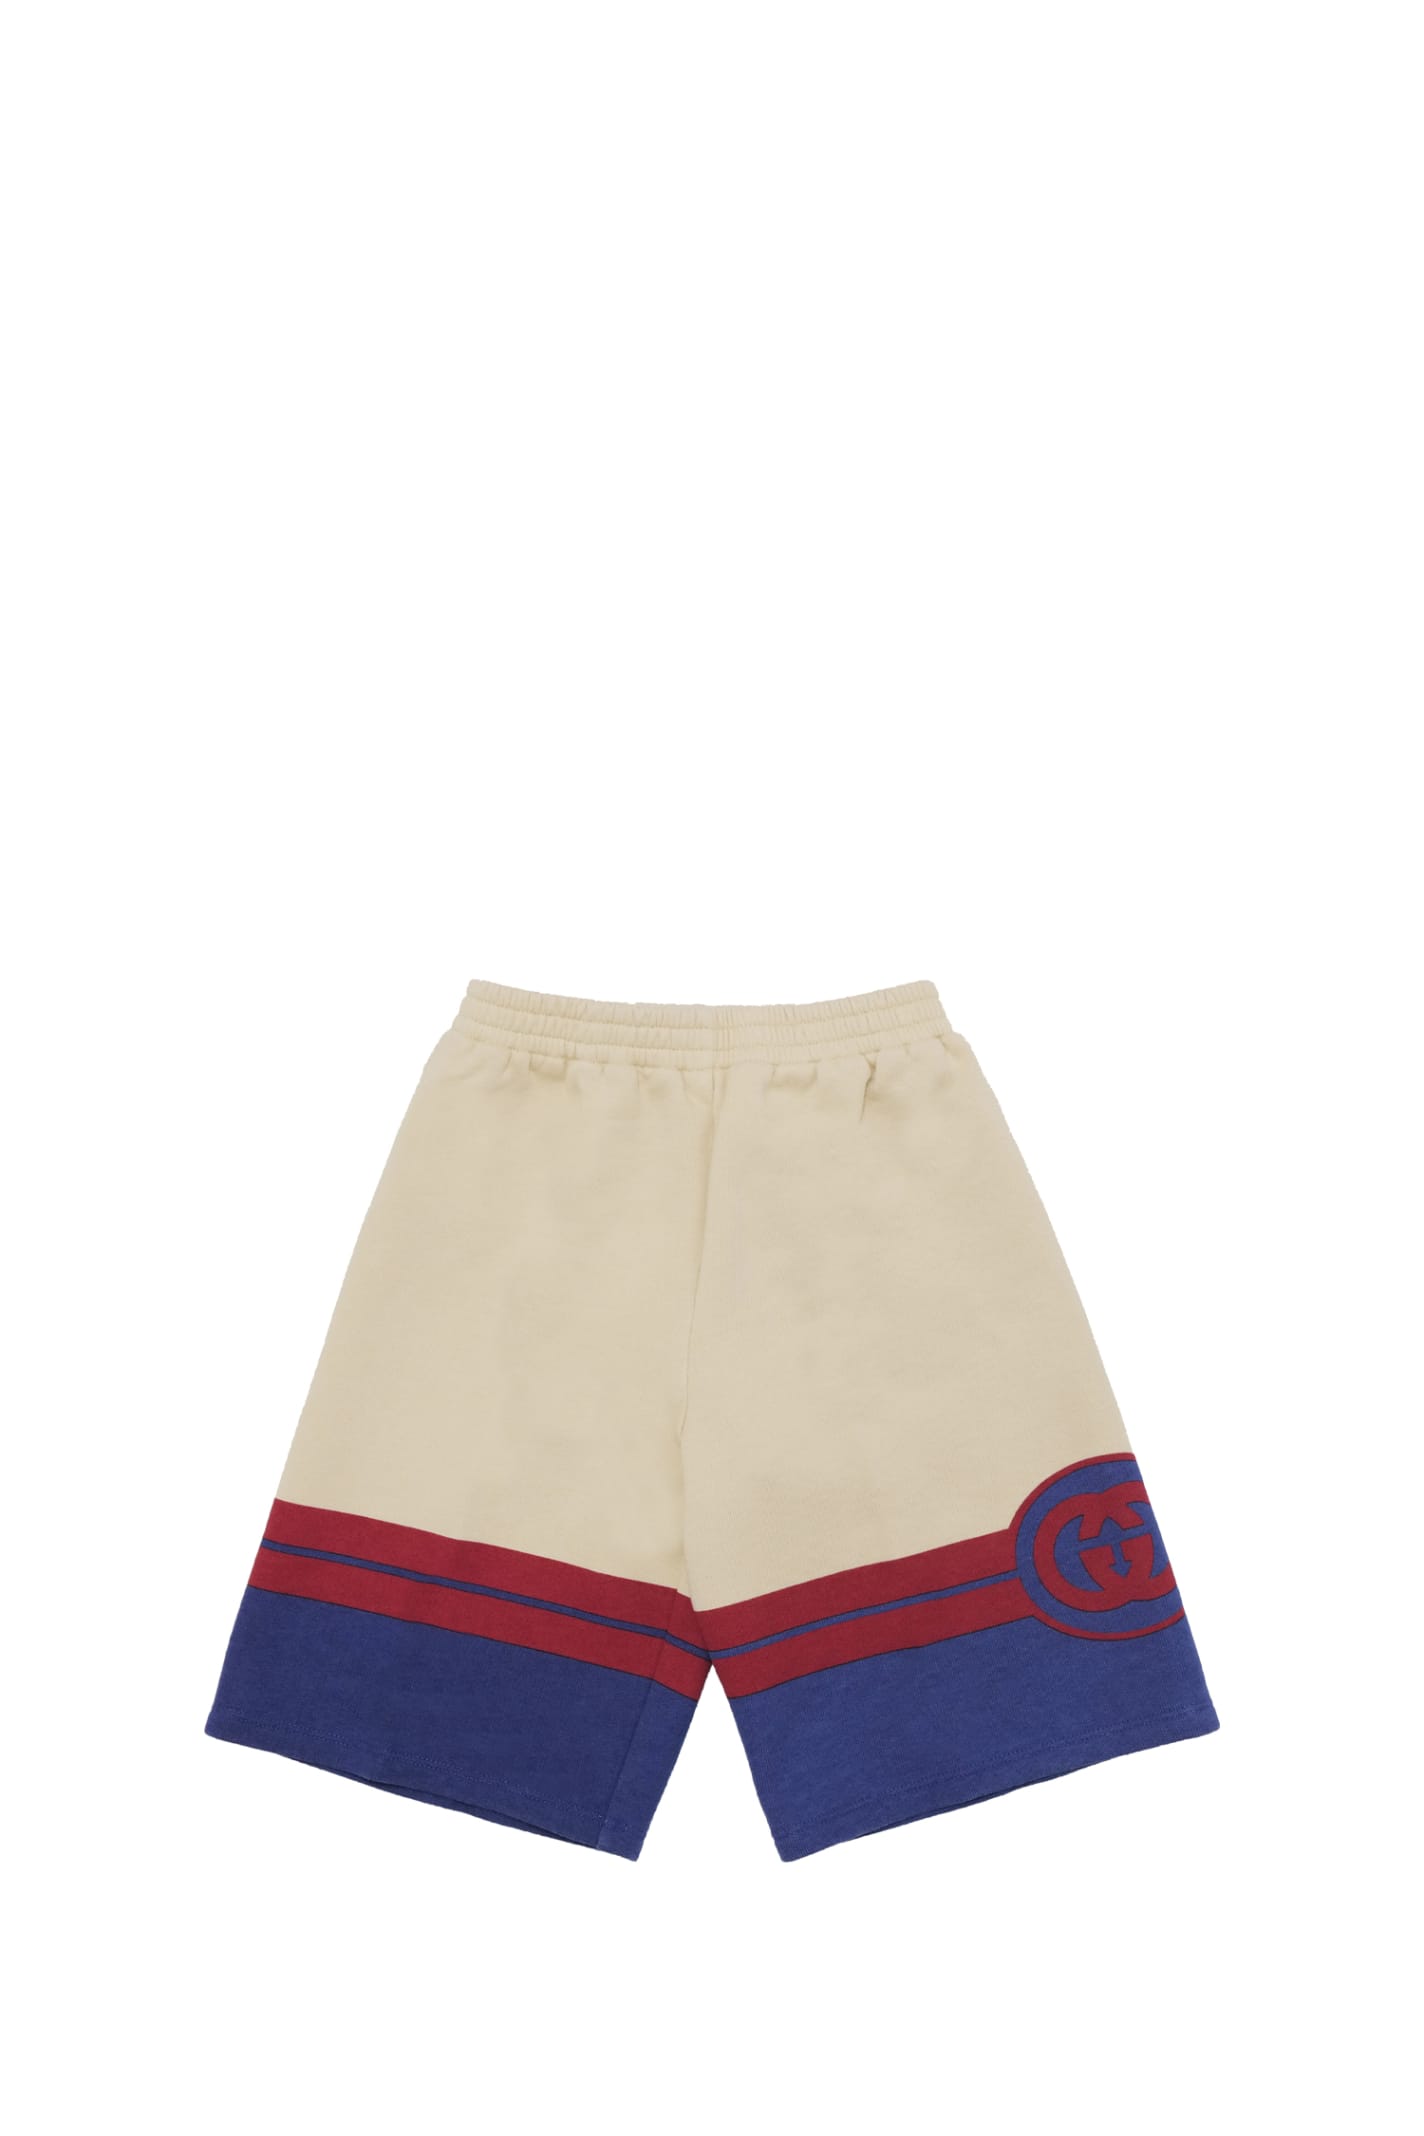 Gucci Kids' Shorts In Multicolor